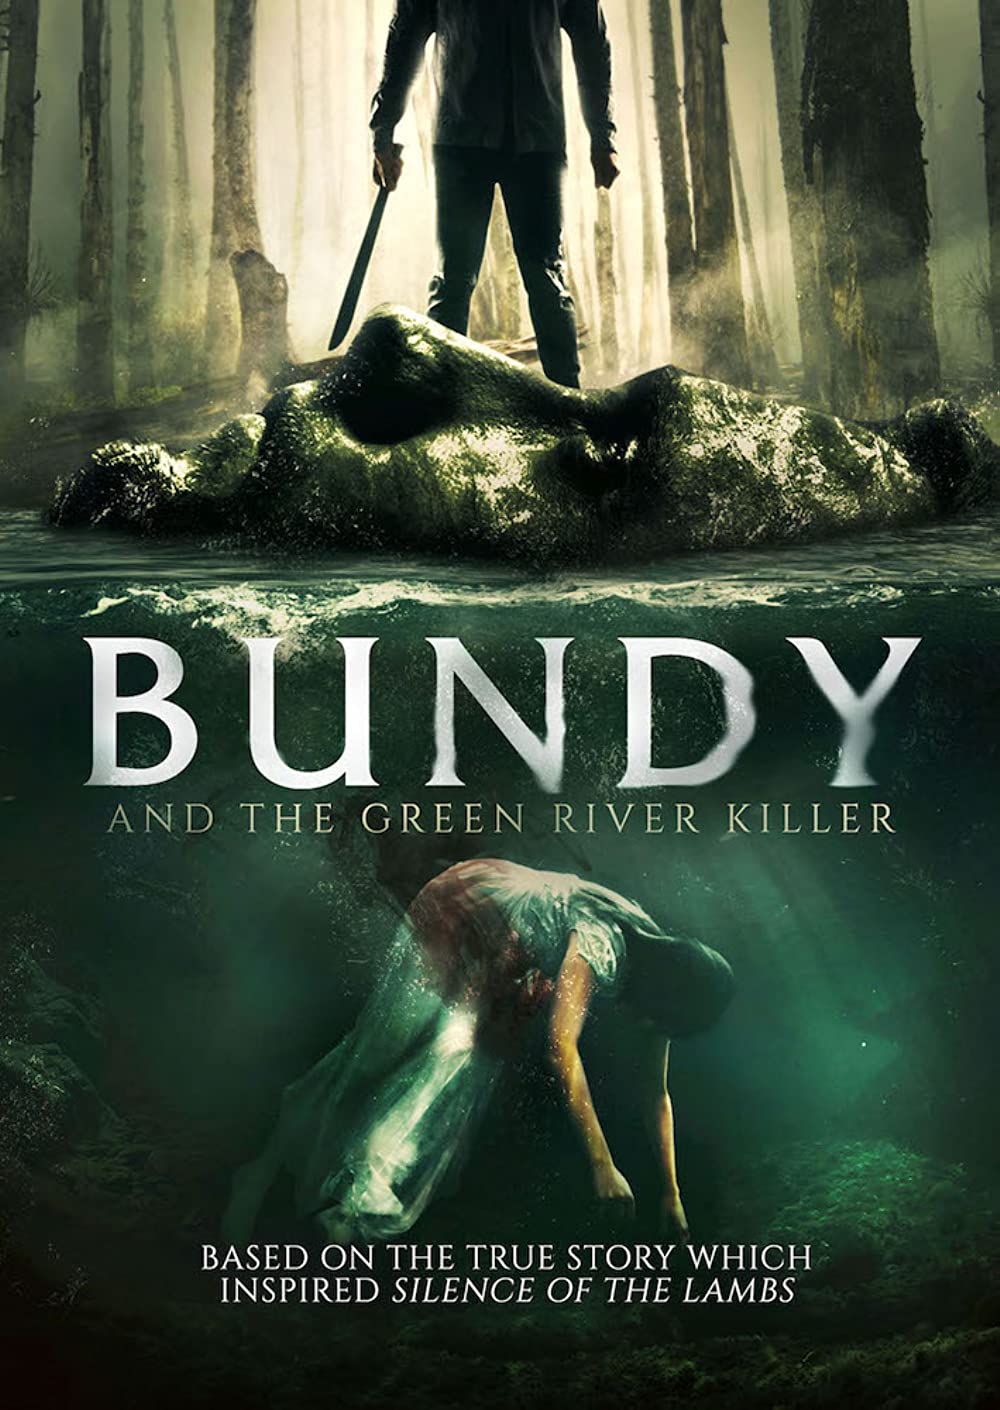 Filmbeschreibung zu Bundy and the Green River Killer